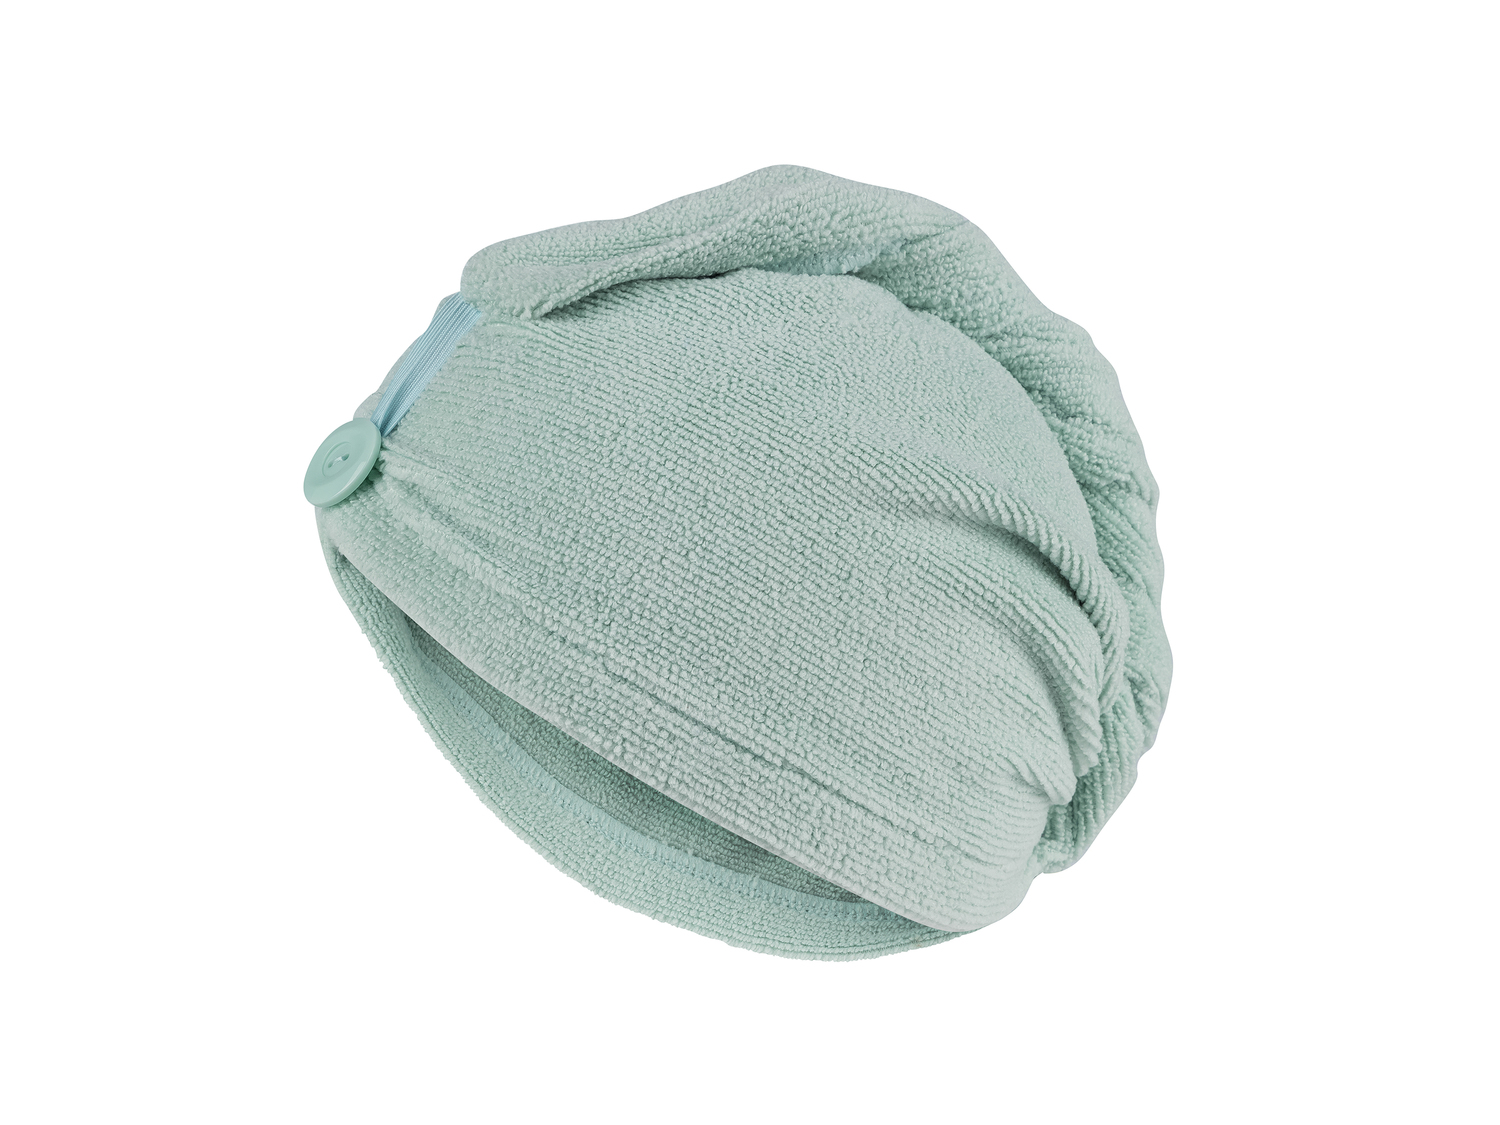 Serviette turban en éponge , le prix 2.99 €  
-  Microfibre
-  3 coloris au choix